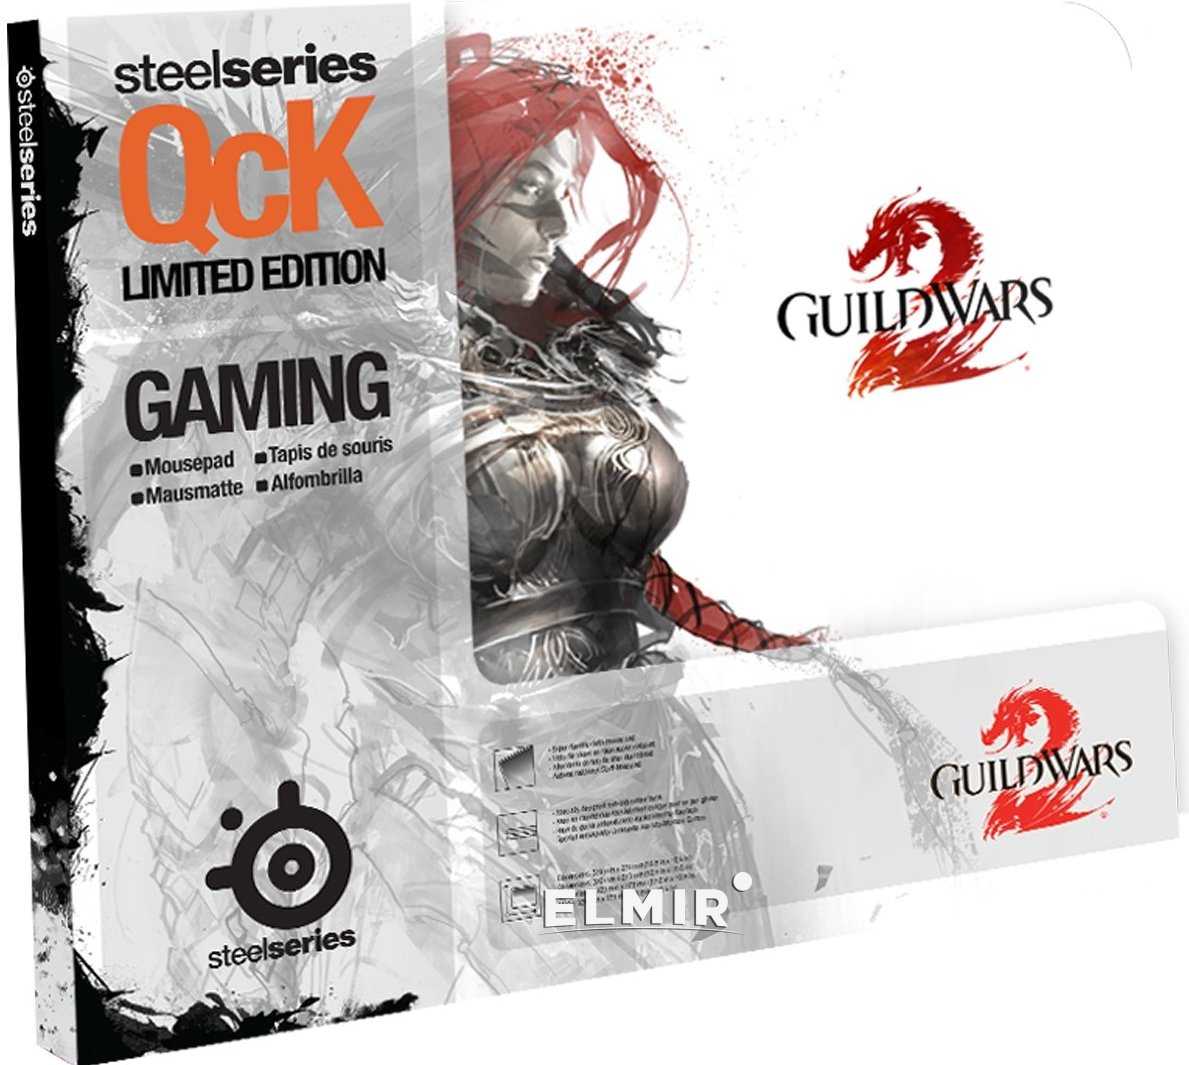 Steelseries guild wars 2 купить по акционной цене , отзывы и обзоры.